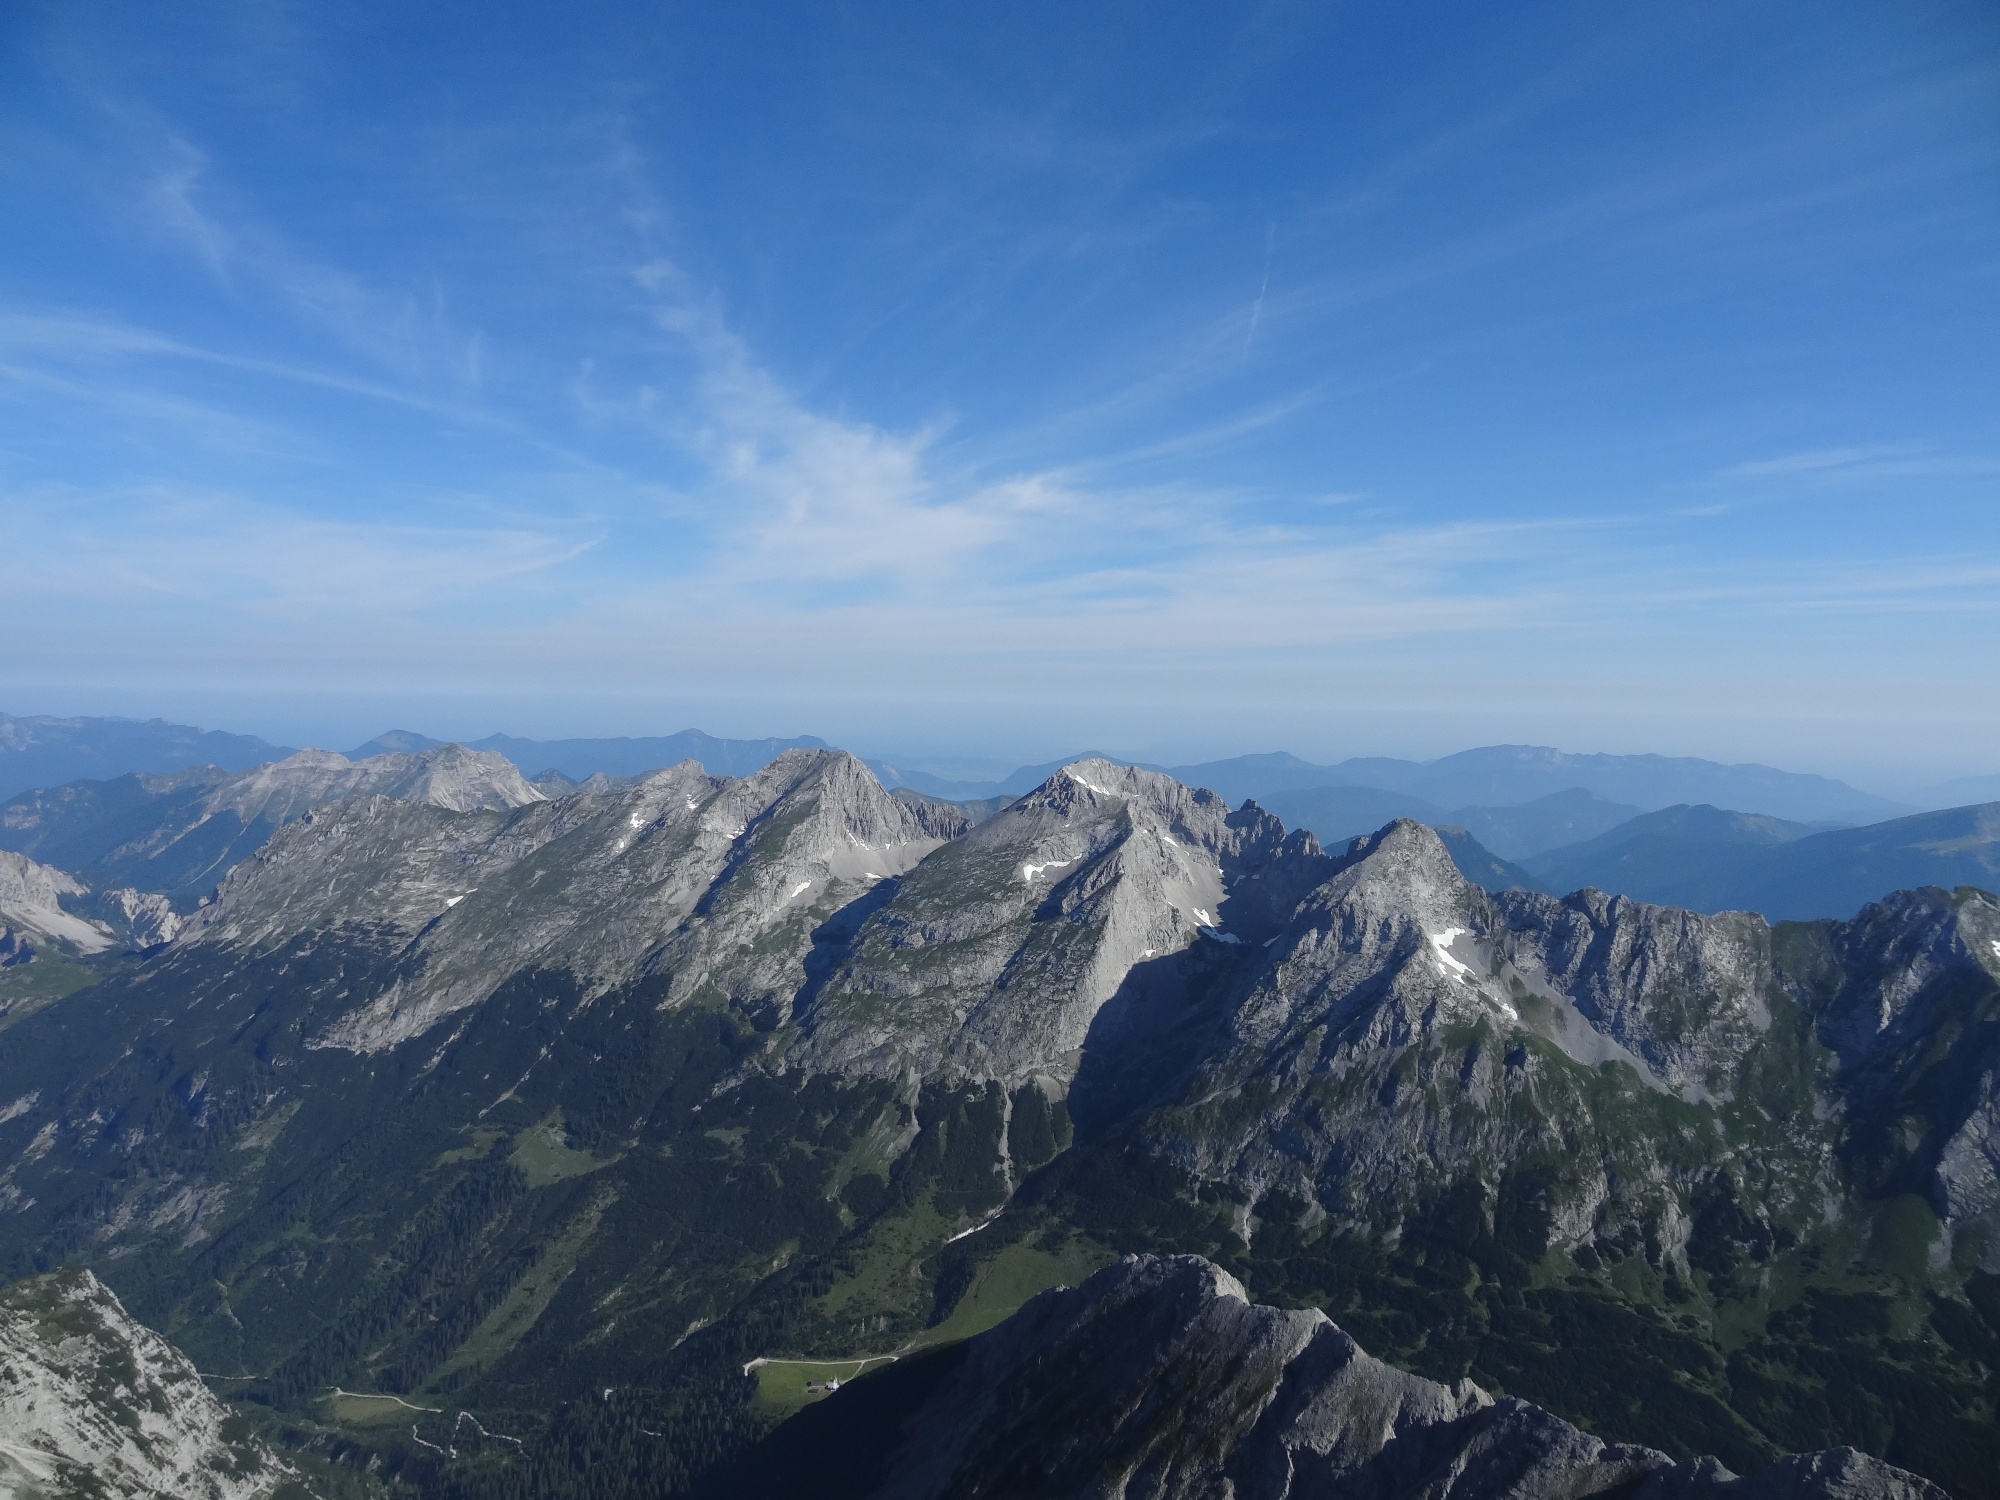 Der Blick vom Gipfel der Birkkarspitze auf die Nördliche Karwendelkette.